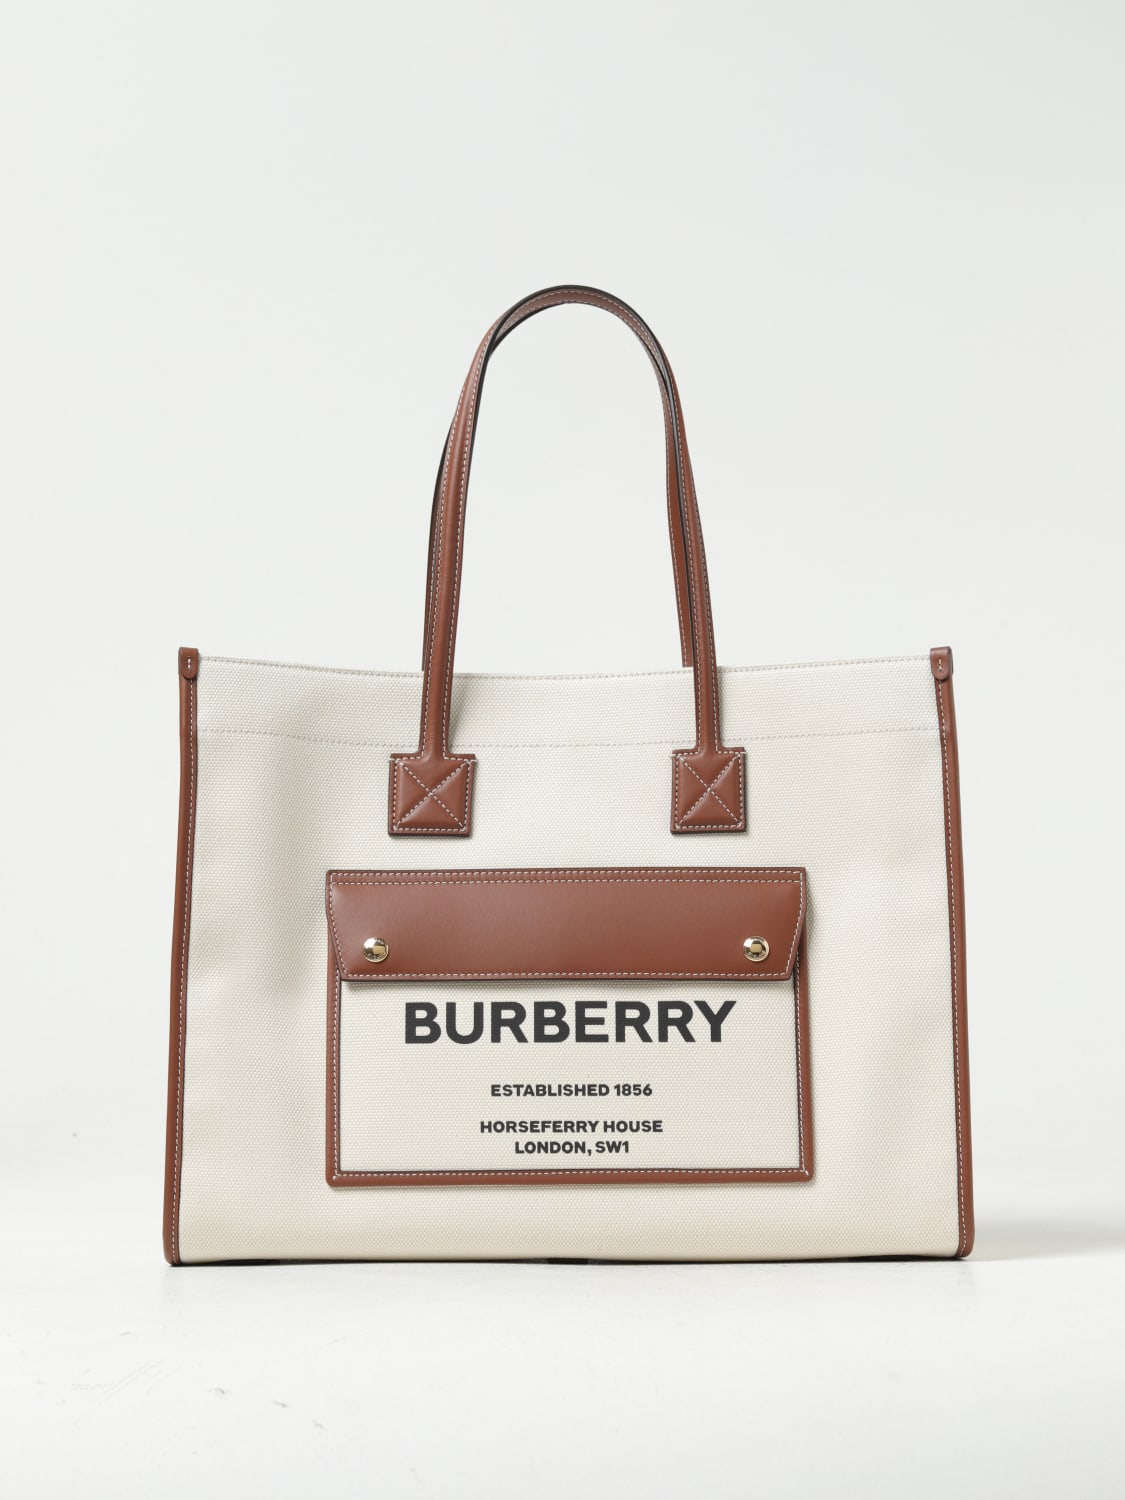 Burberry,Burberry,Burberry  Burberry purse, Burberry bag, Burberry handbags